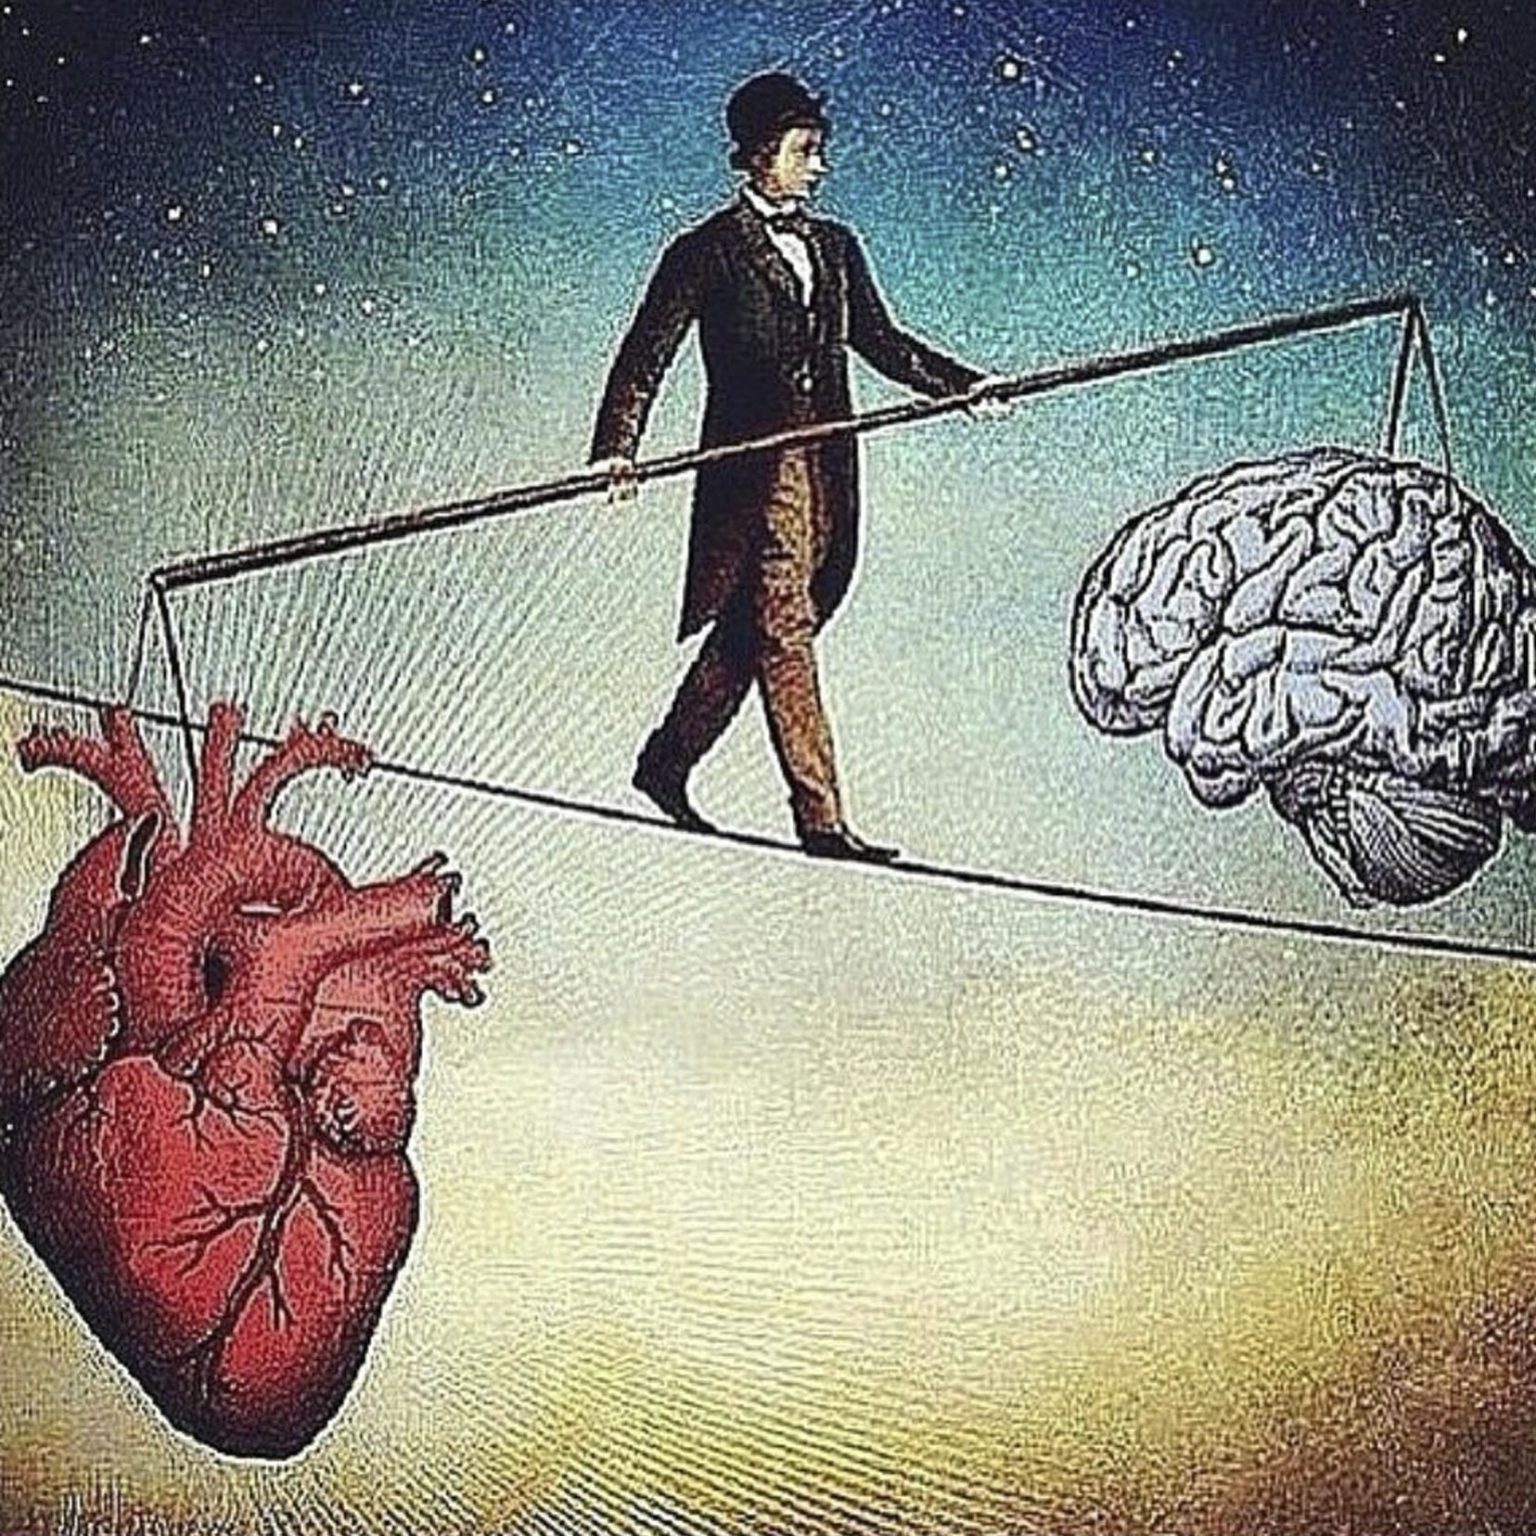 Побуждение жизни. Ум и сердце. Мозг и сердце. Борьба разума и чувств. Балансировать между разумом и сердцем.